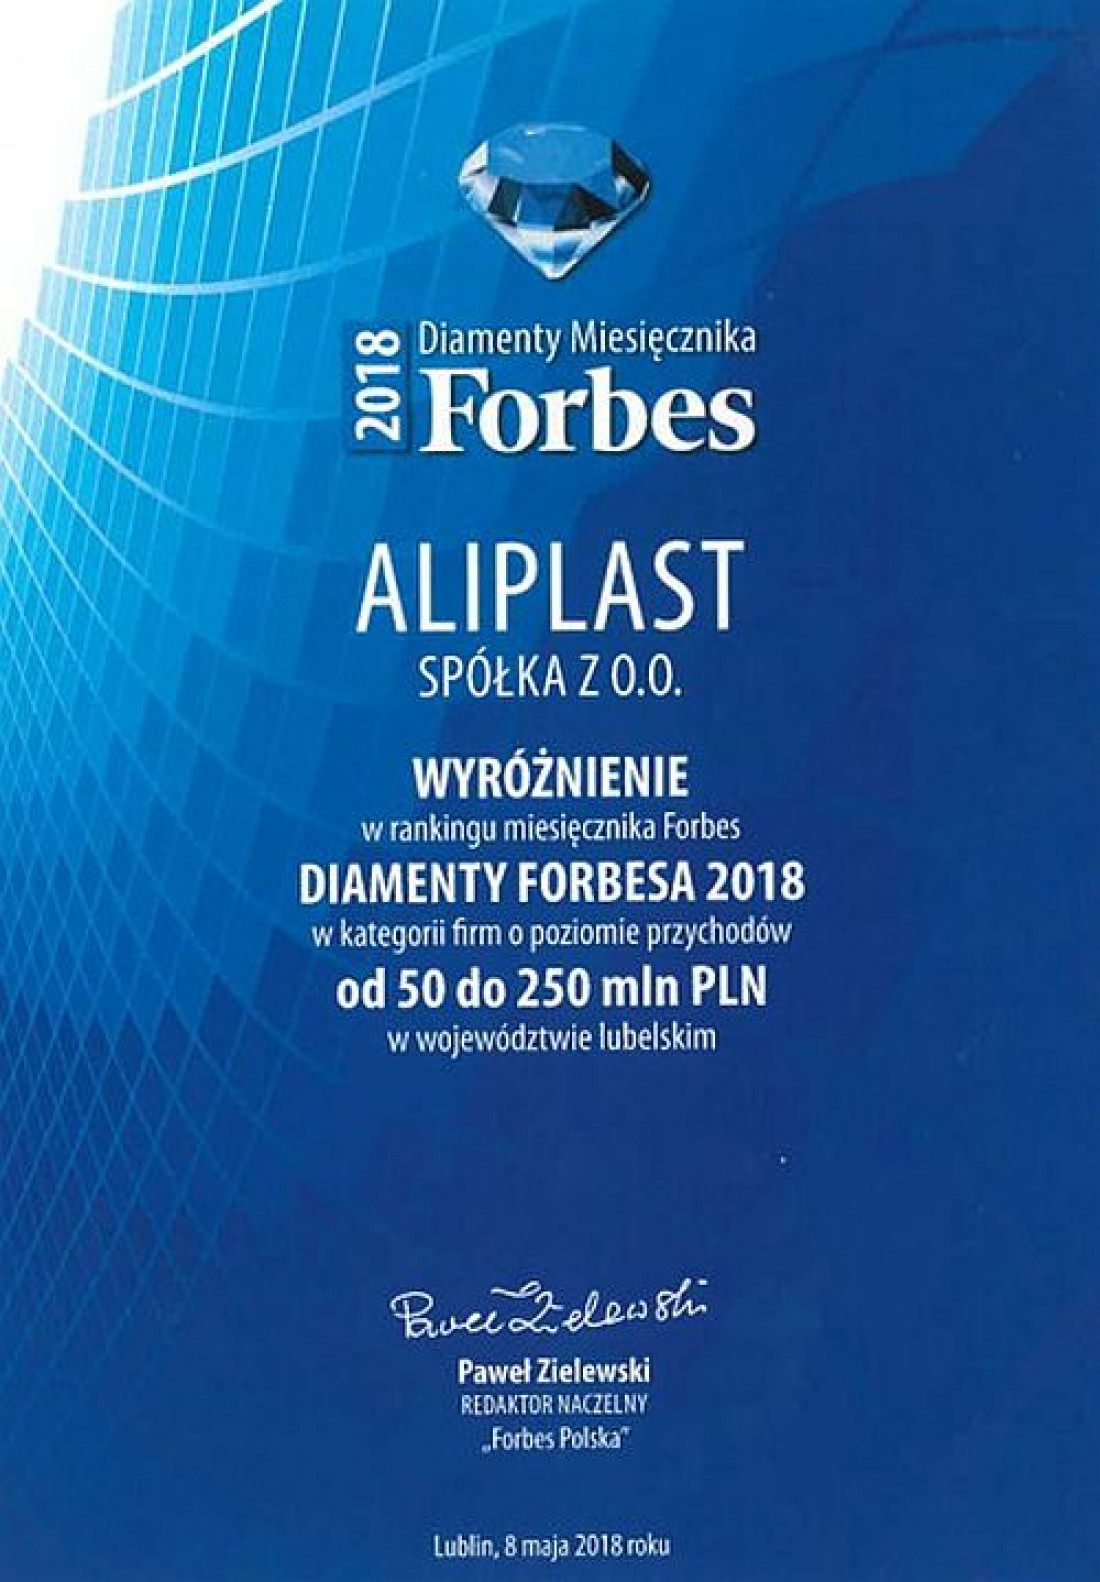 Diamenty Forbesa 2018 - wyróżnienie dla Spółki Aliplast